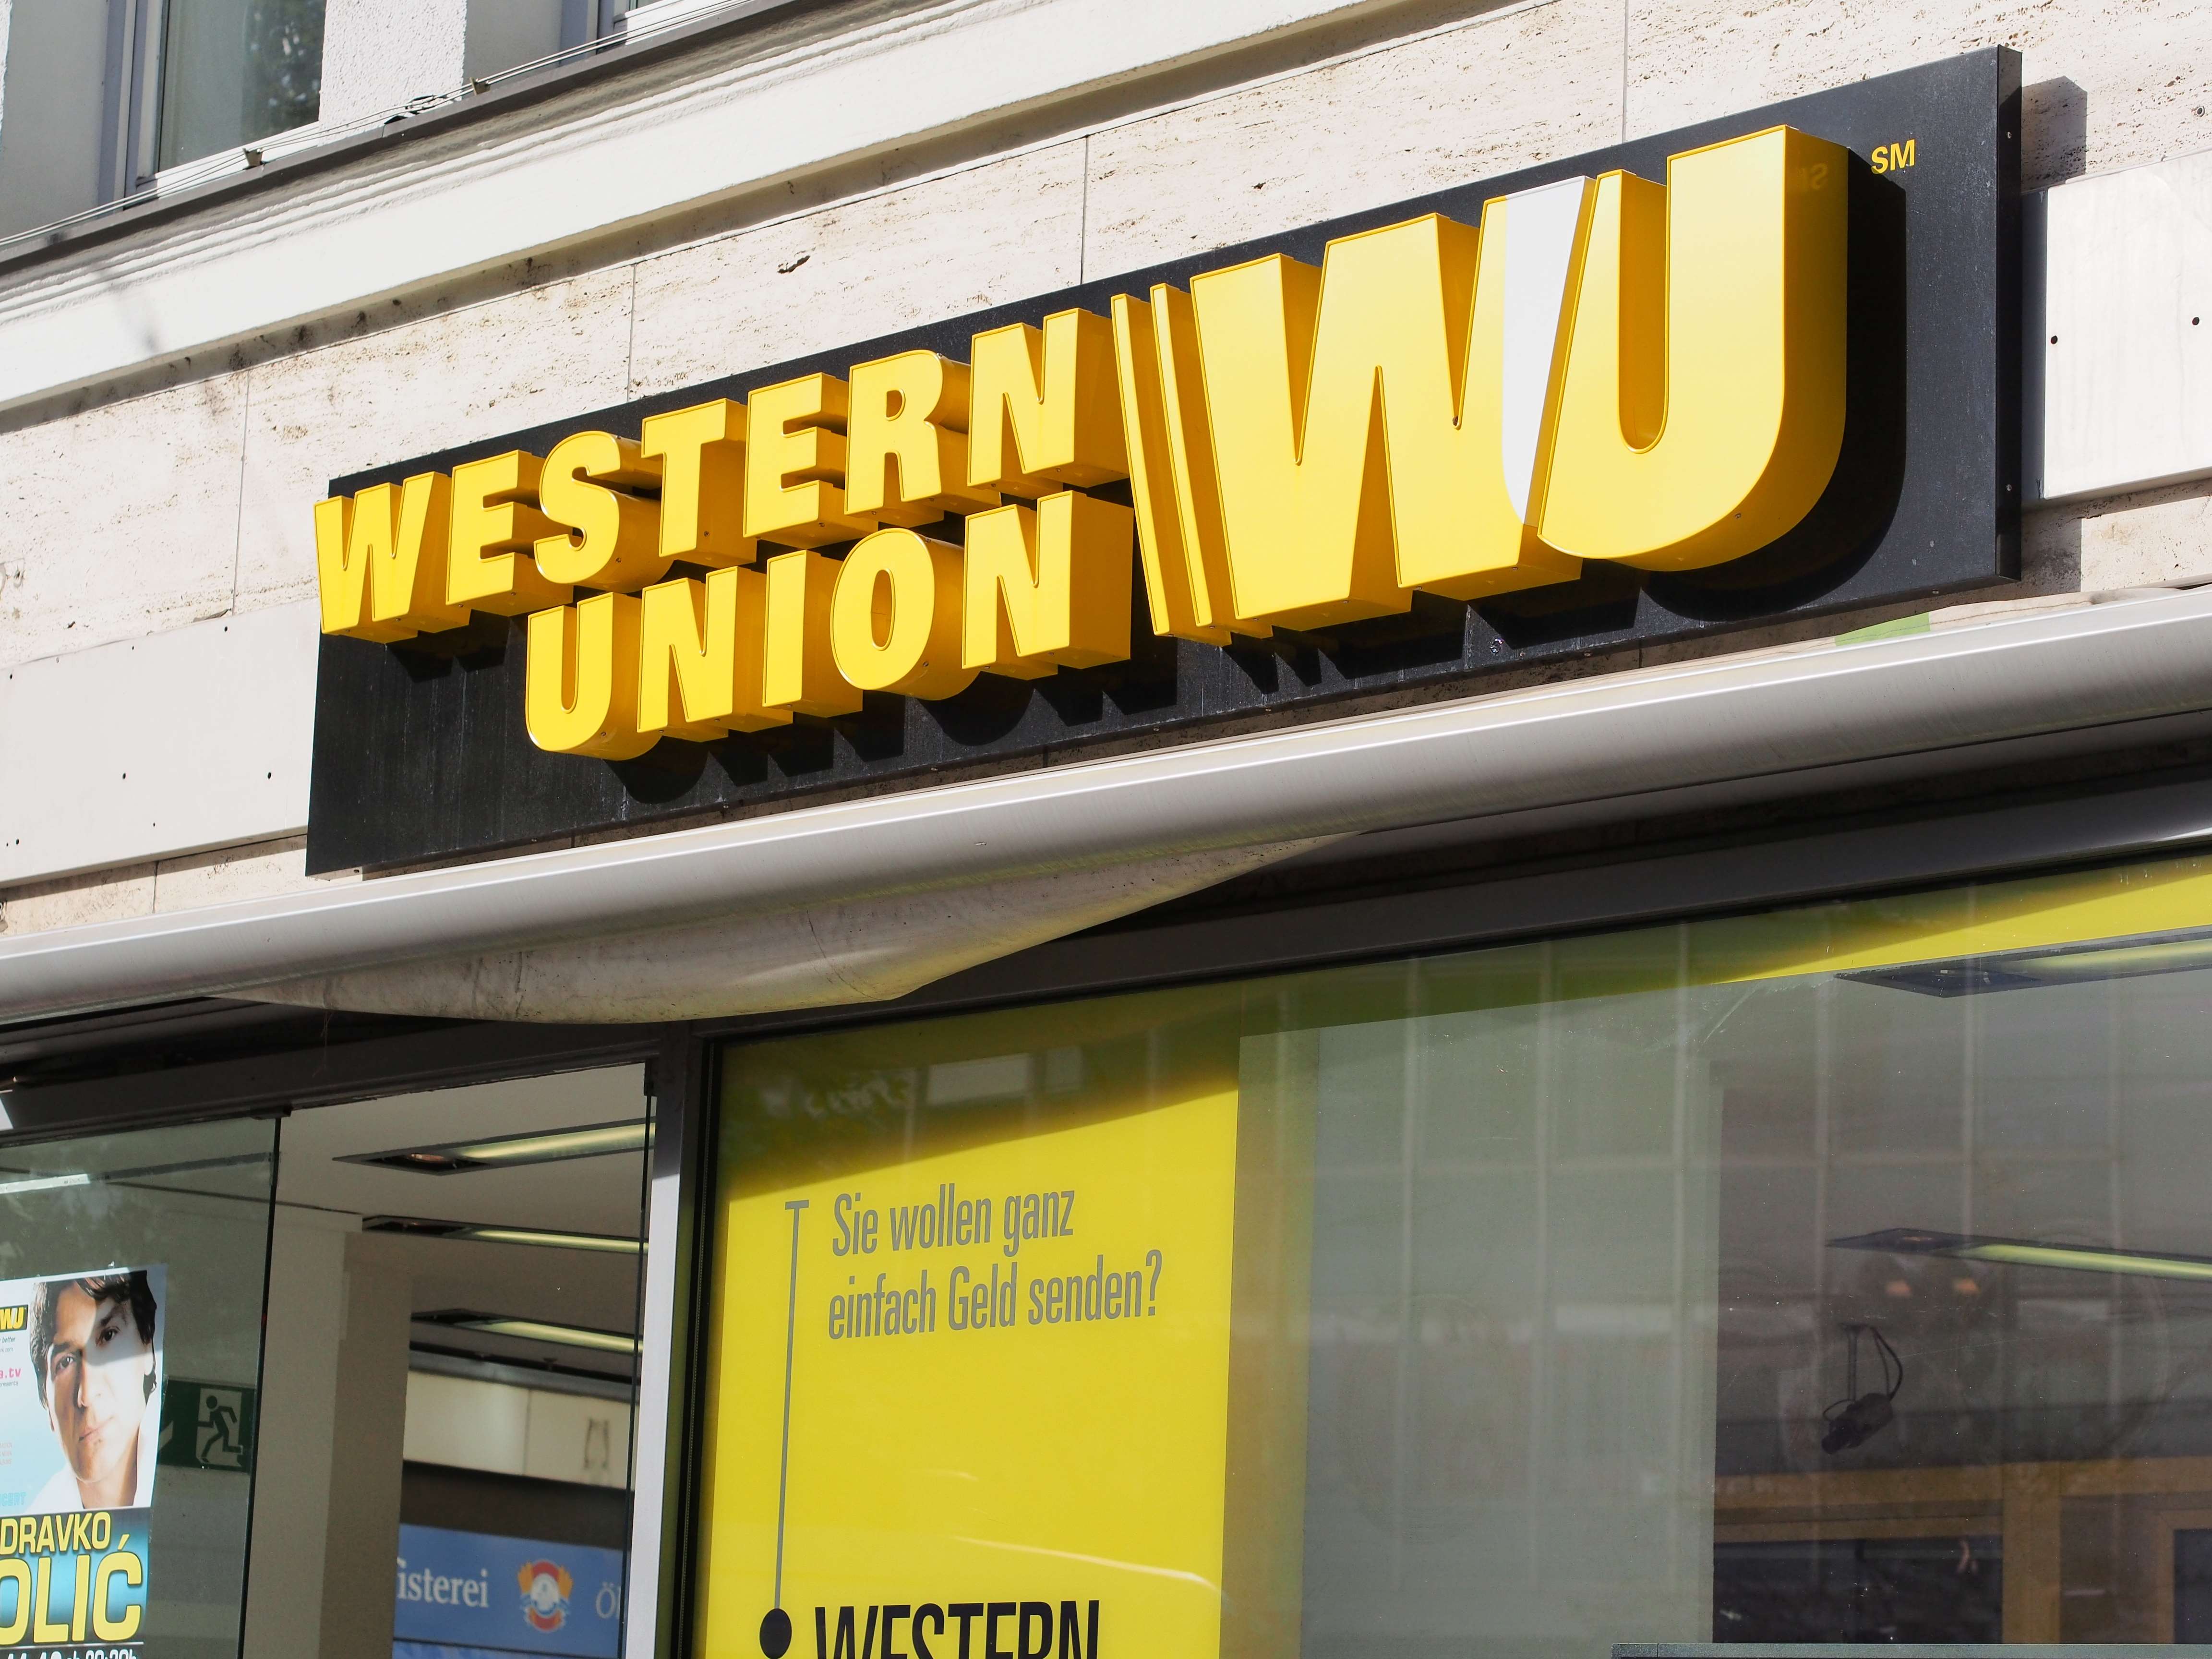 Что ждет Oracle и Western Union?